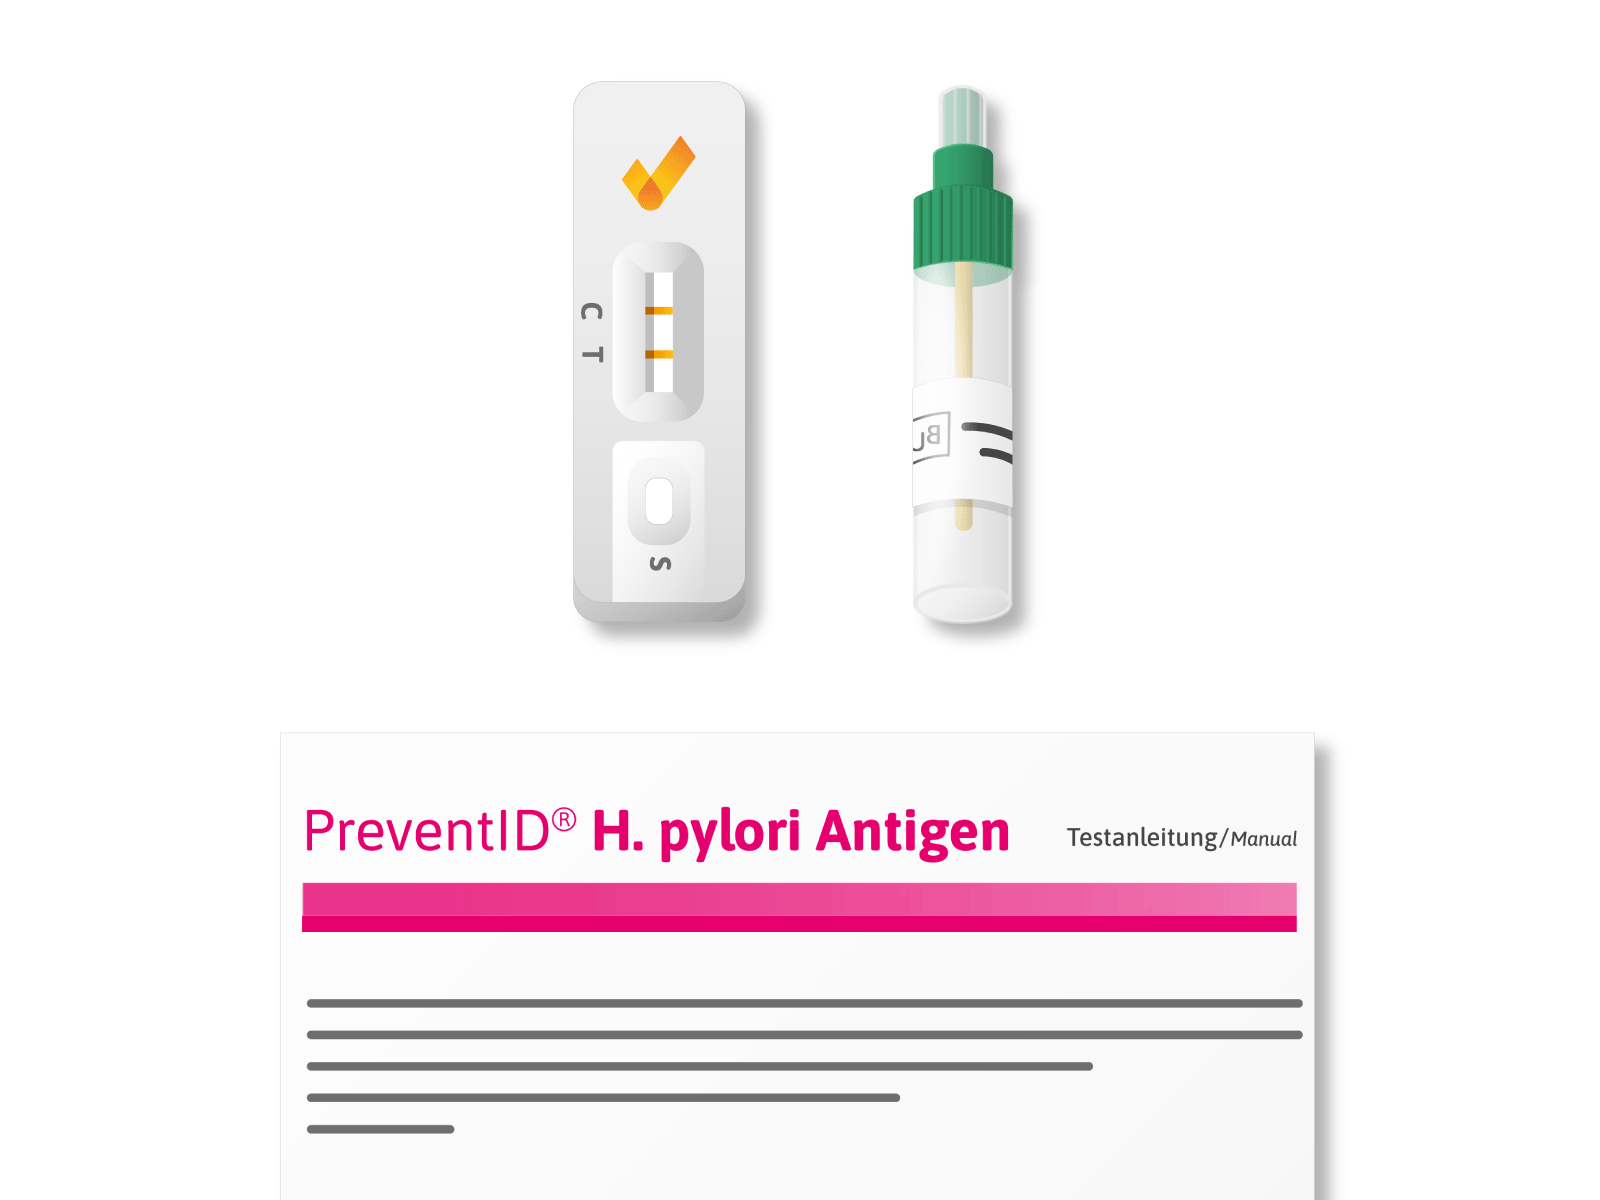 PreventID® H. pylori Antigen